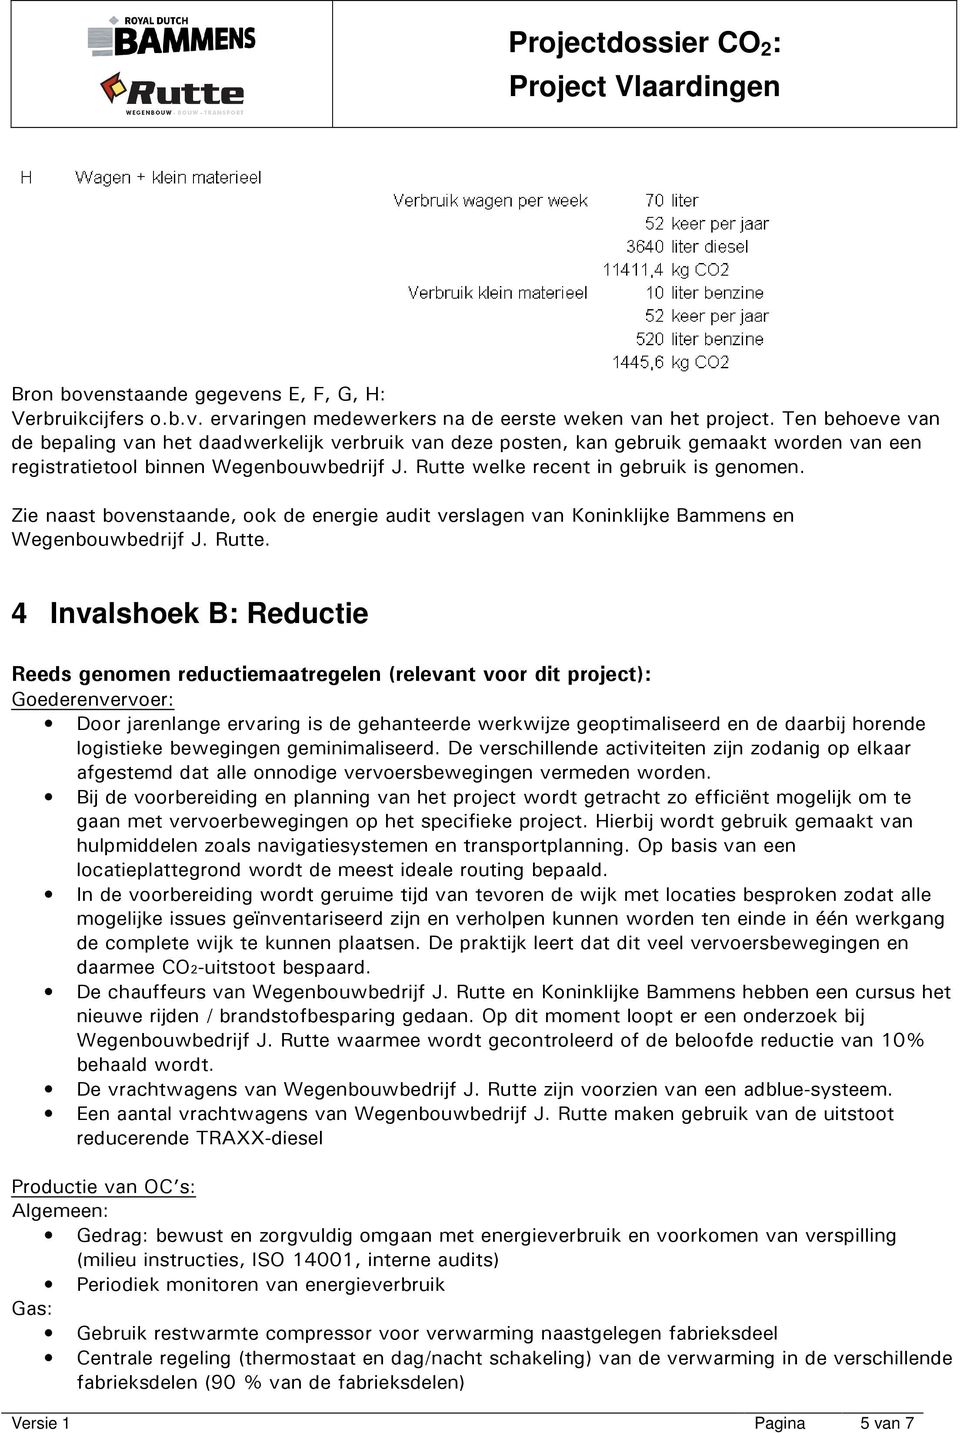 Zie naast bovenstaande, ook de energie audit verslagen van Koninklijke Bammens en Wegenbouwbedrijf J. Rutte.